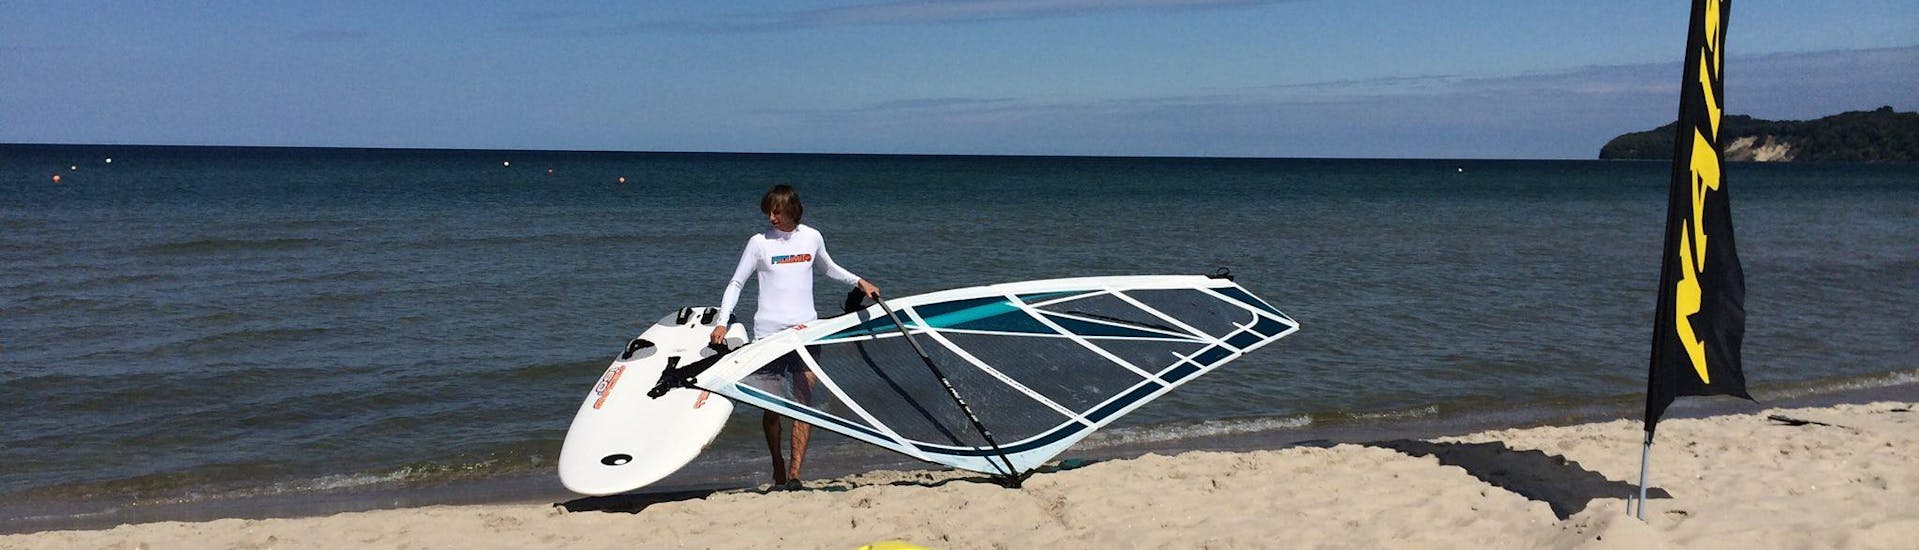 Lezioni di windsurf a Binz da 7 anni.